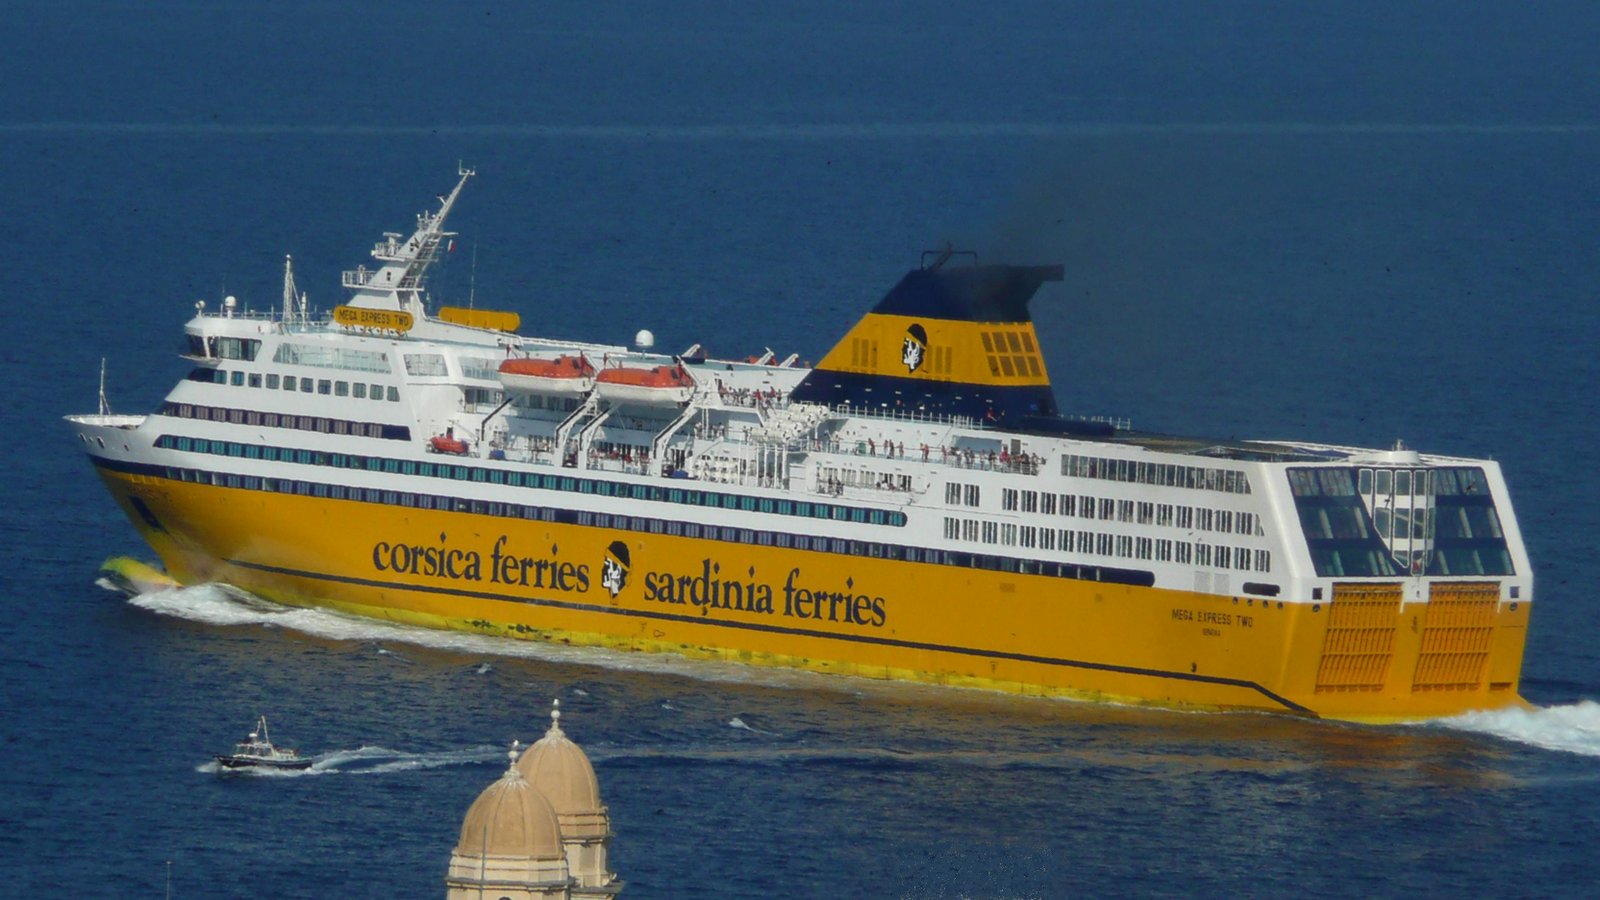 Le départ du Mega Express Two de la Corsica Ferries, vu des hauteurs de la ville, en juillet 2013 (au premier plan, le sommet de l'église St Jean) ; photo : Romain Roussel